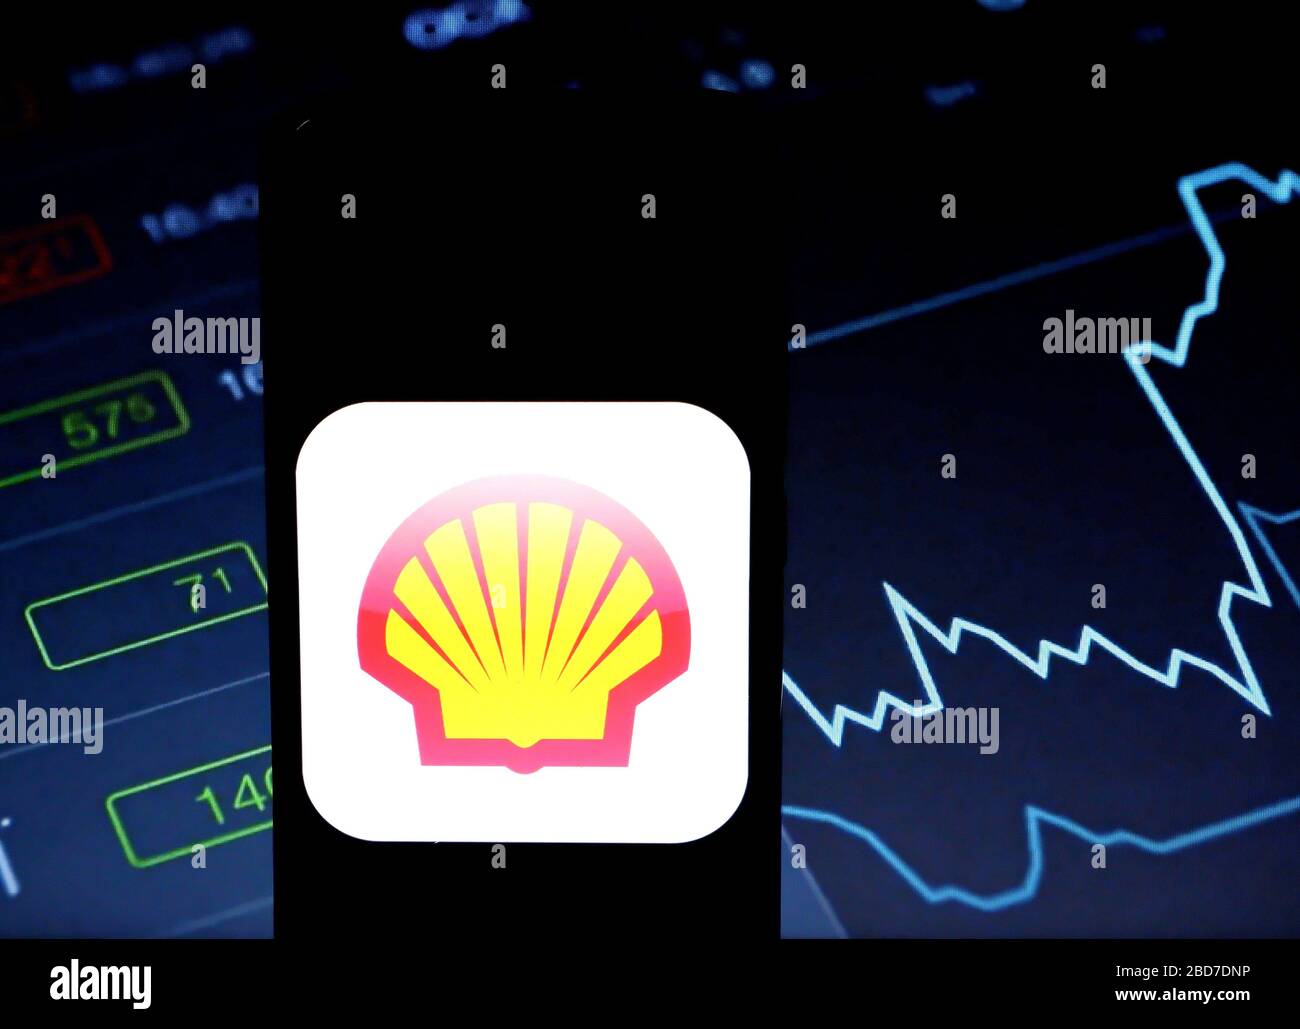 7 aprile 2020, India: In questa illustrazione fotografica un logo Royal Dutch Shell & British Petroleum Company è visibile su uno smartphone. (Immagine di credito: © Avishek Das/SOPA Images via ZUMA Wire) Foto Stock